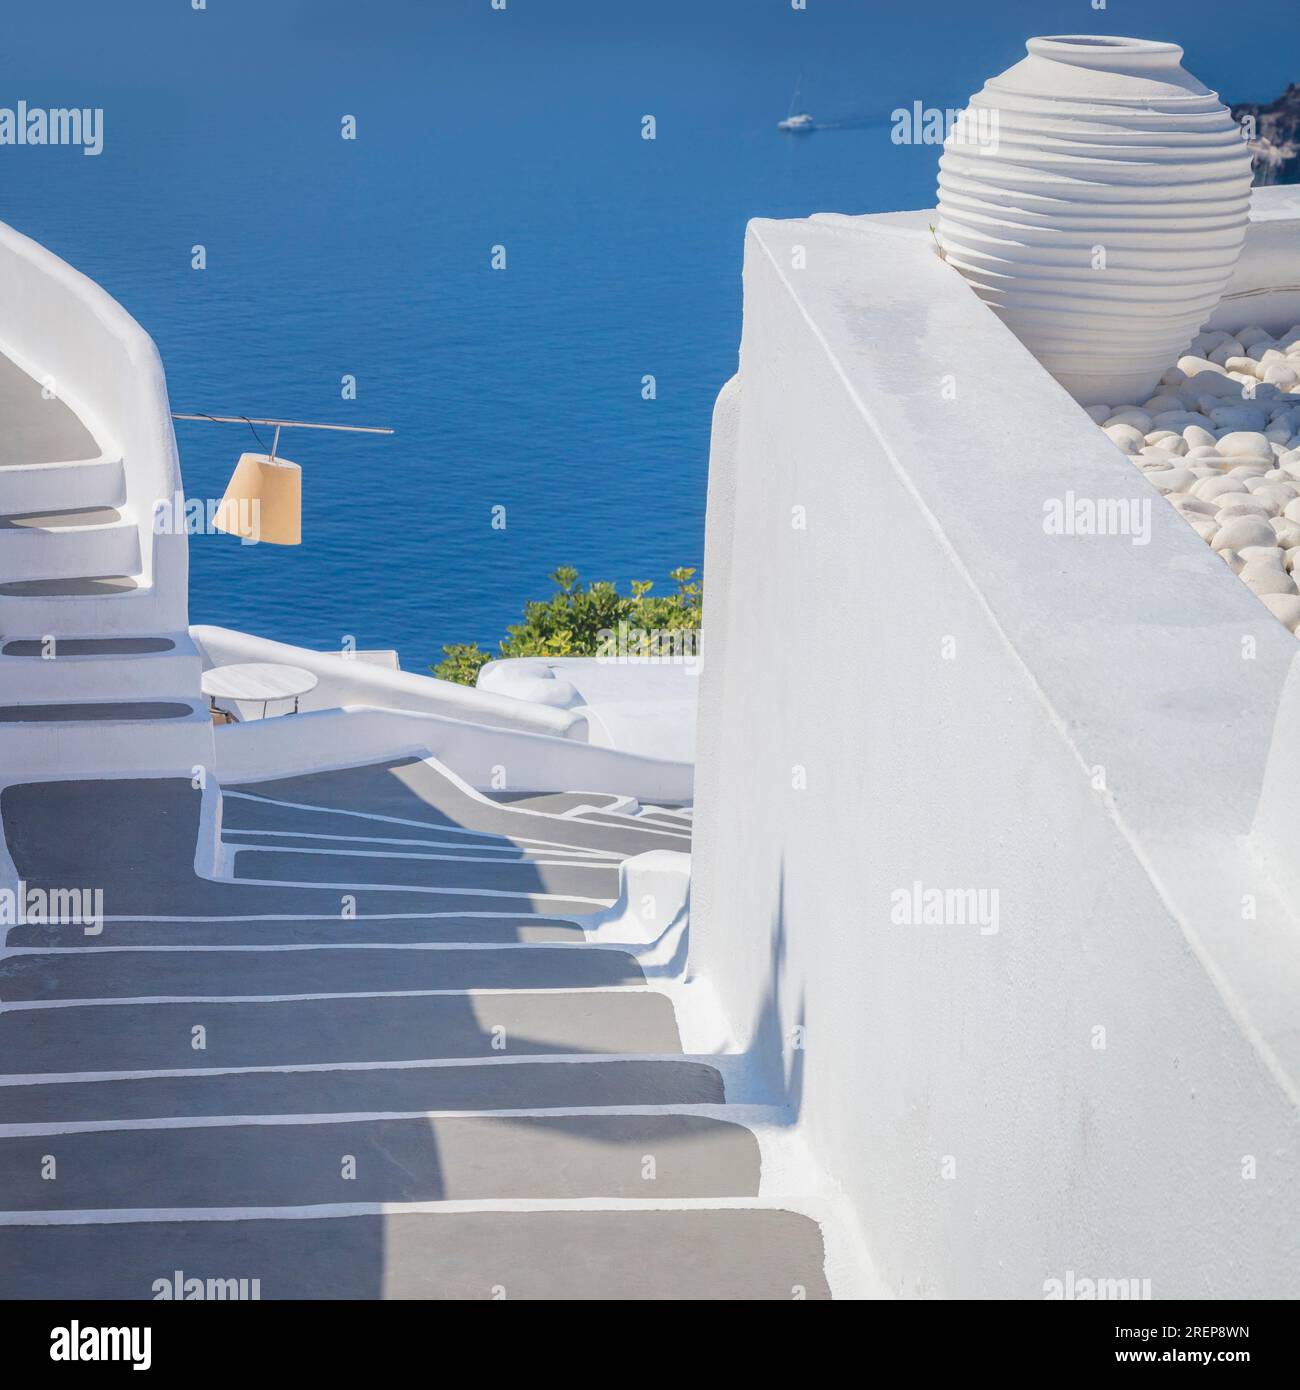 Grecia, isola di Santorini, Oia - architettura bianca di una strada stretta, scalini che conducono al mare. Isole greche, Santorini, vacanza europea Foto Stock